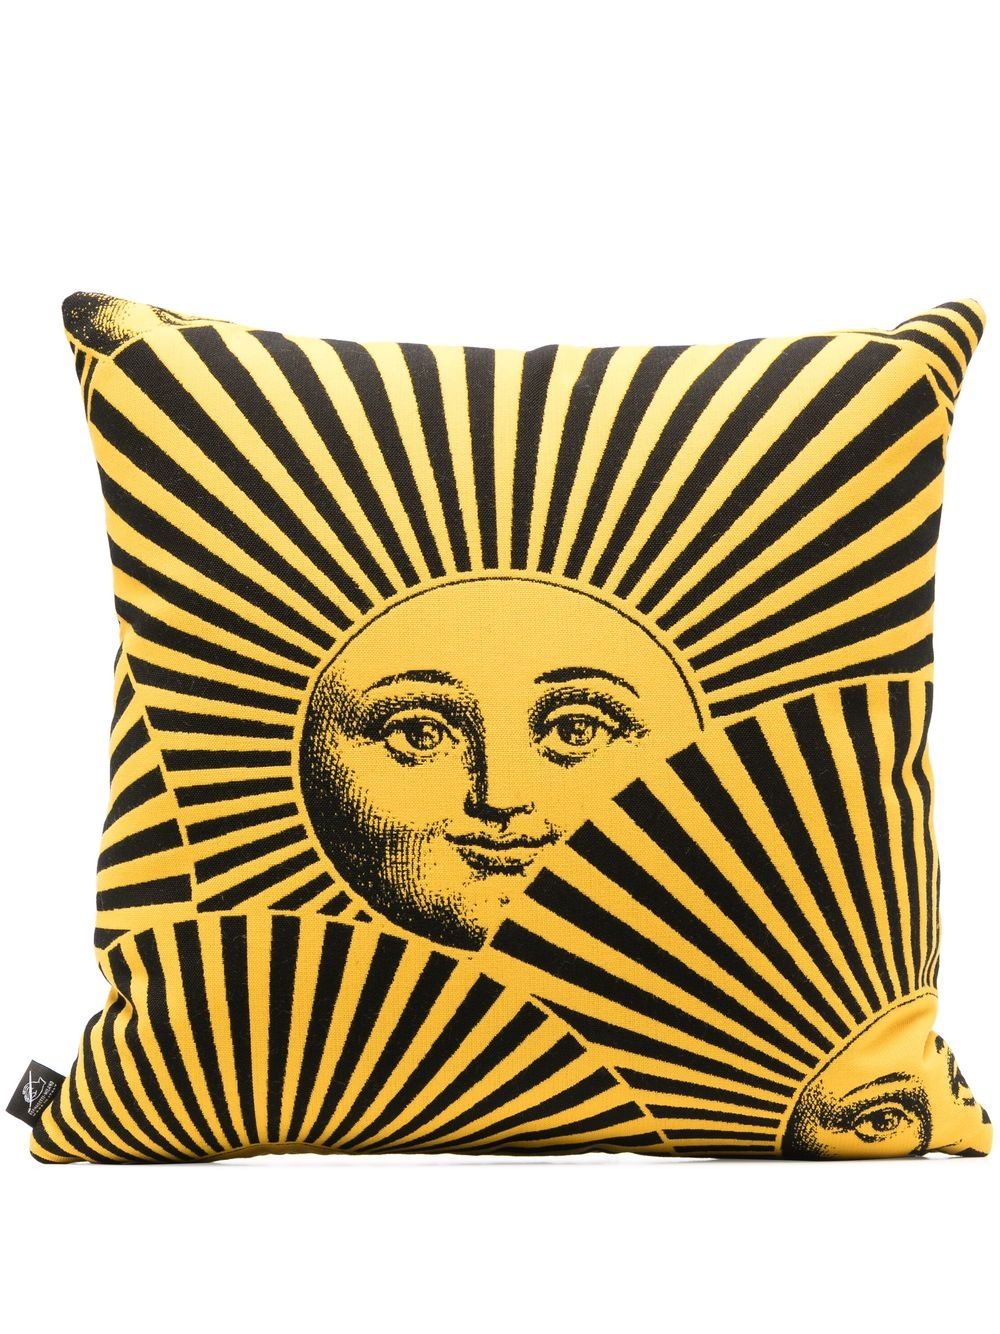 Fornasetti Soli a Ventaglio-print outdoor cushion (40cm) - Yellow